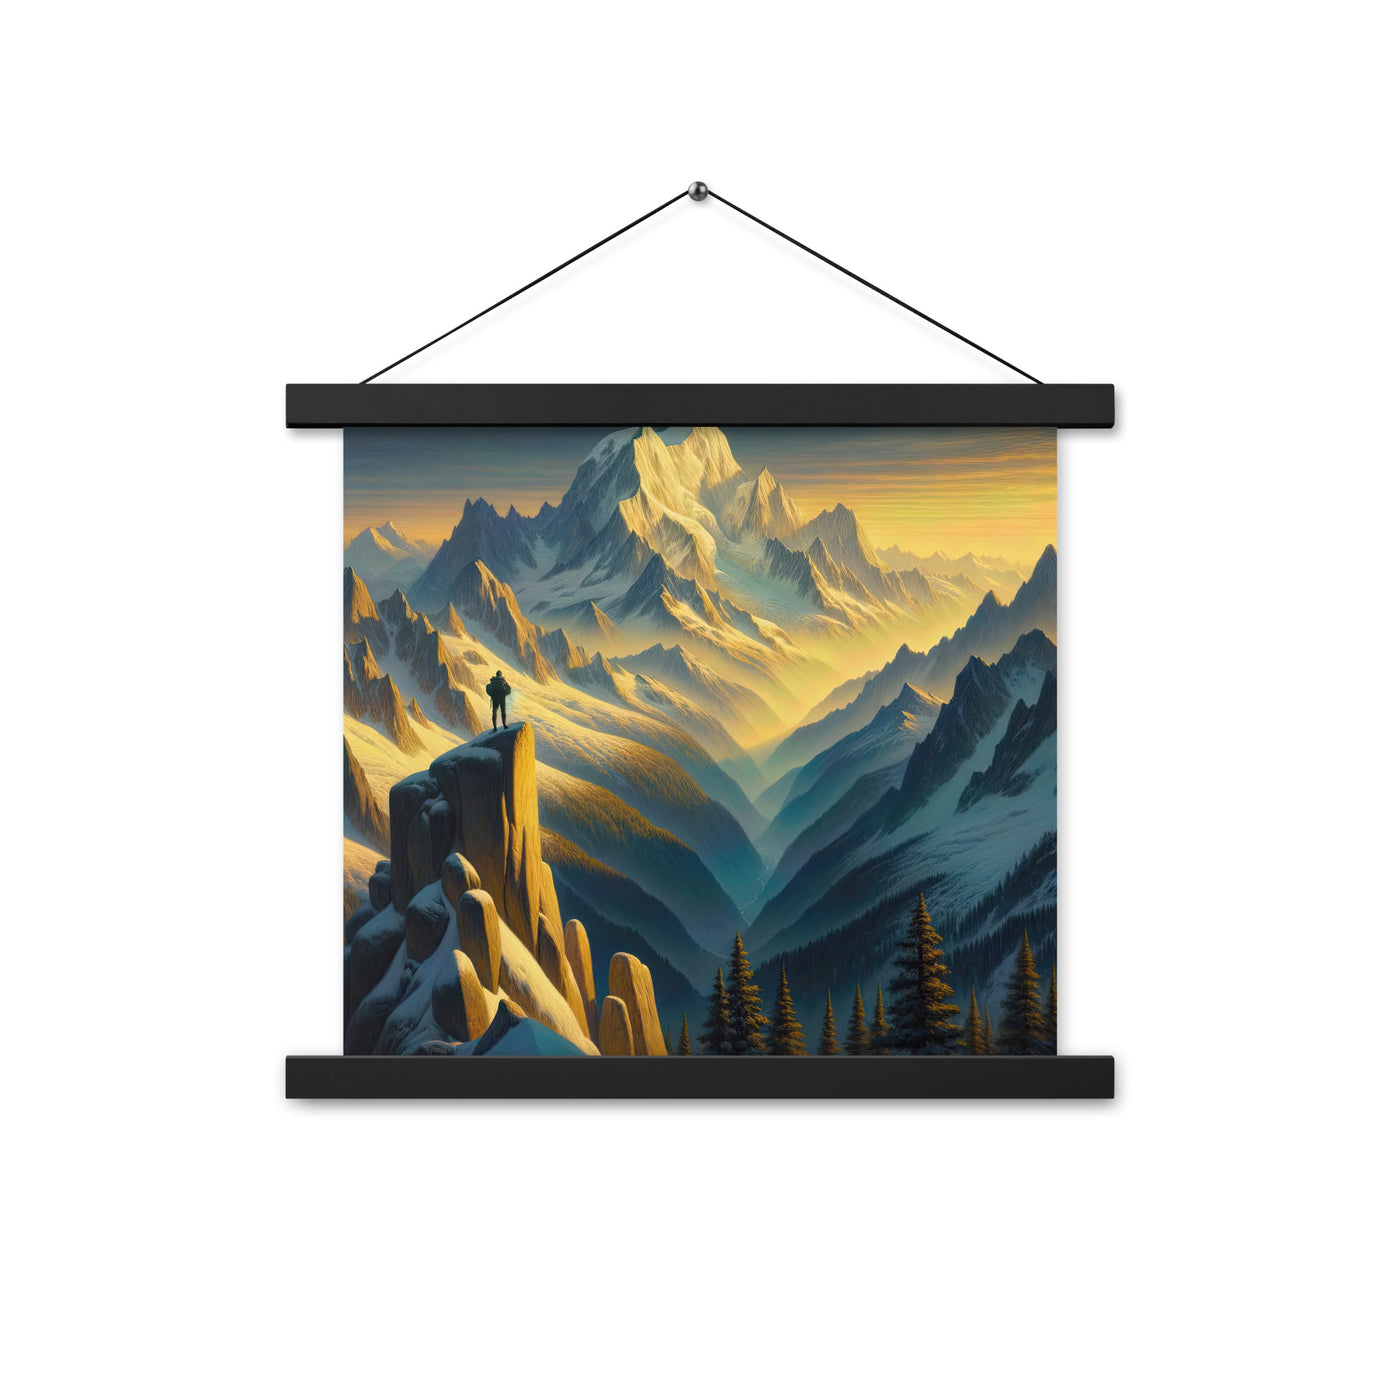 Ölgemälde eines Wanderers bei Morgendämmerung auf Alpengipfeln mit goldenem Sonnenlicht - Premium Poster mit Aufhängung wandern xxx yyy zzz 35.6 x 35.6 cm